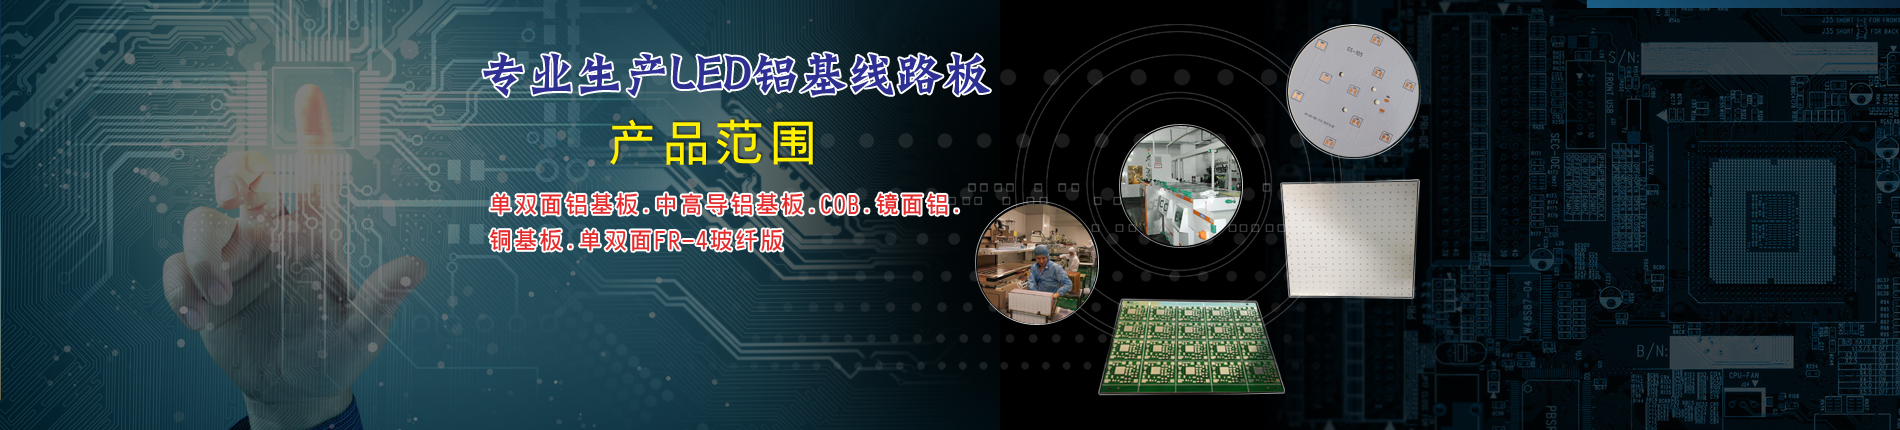 Shenzhen Jinmeihui Electronic Technology Co., Ltd.